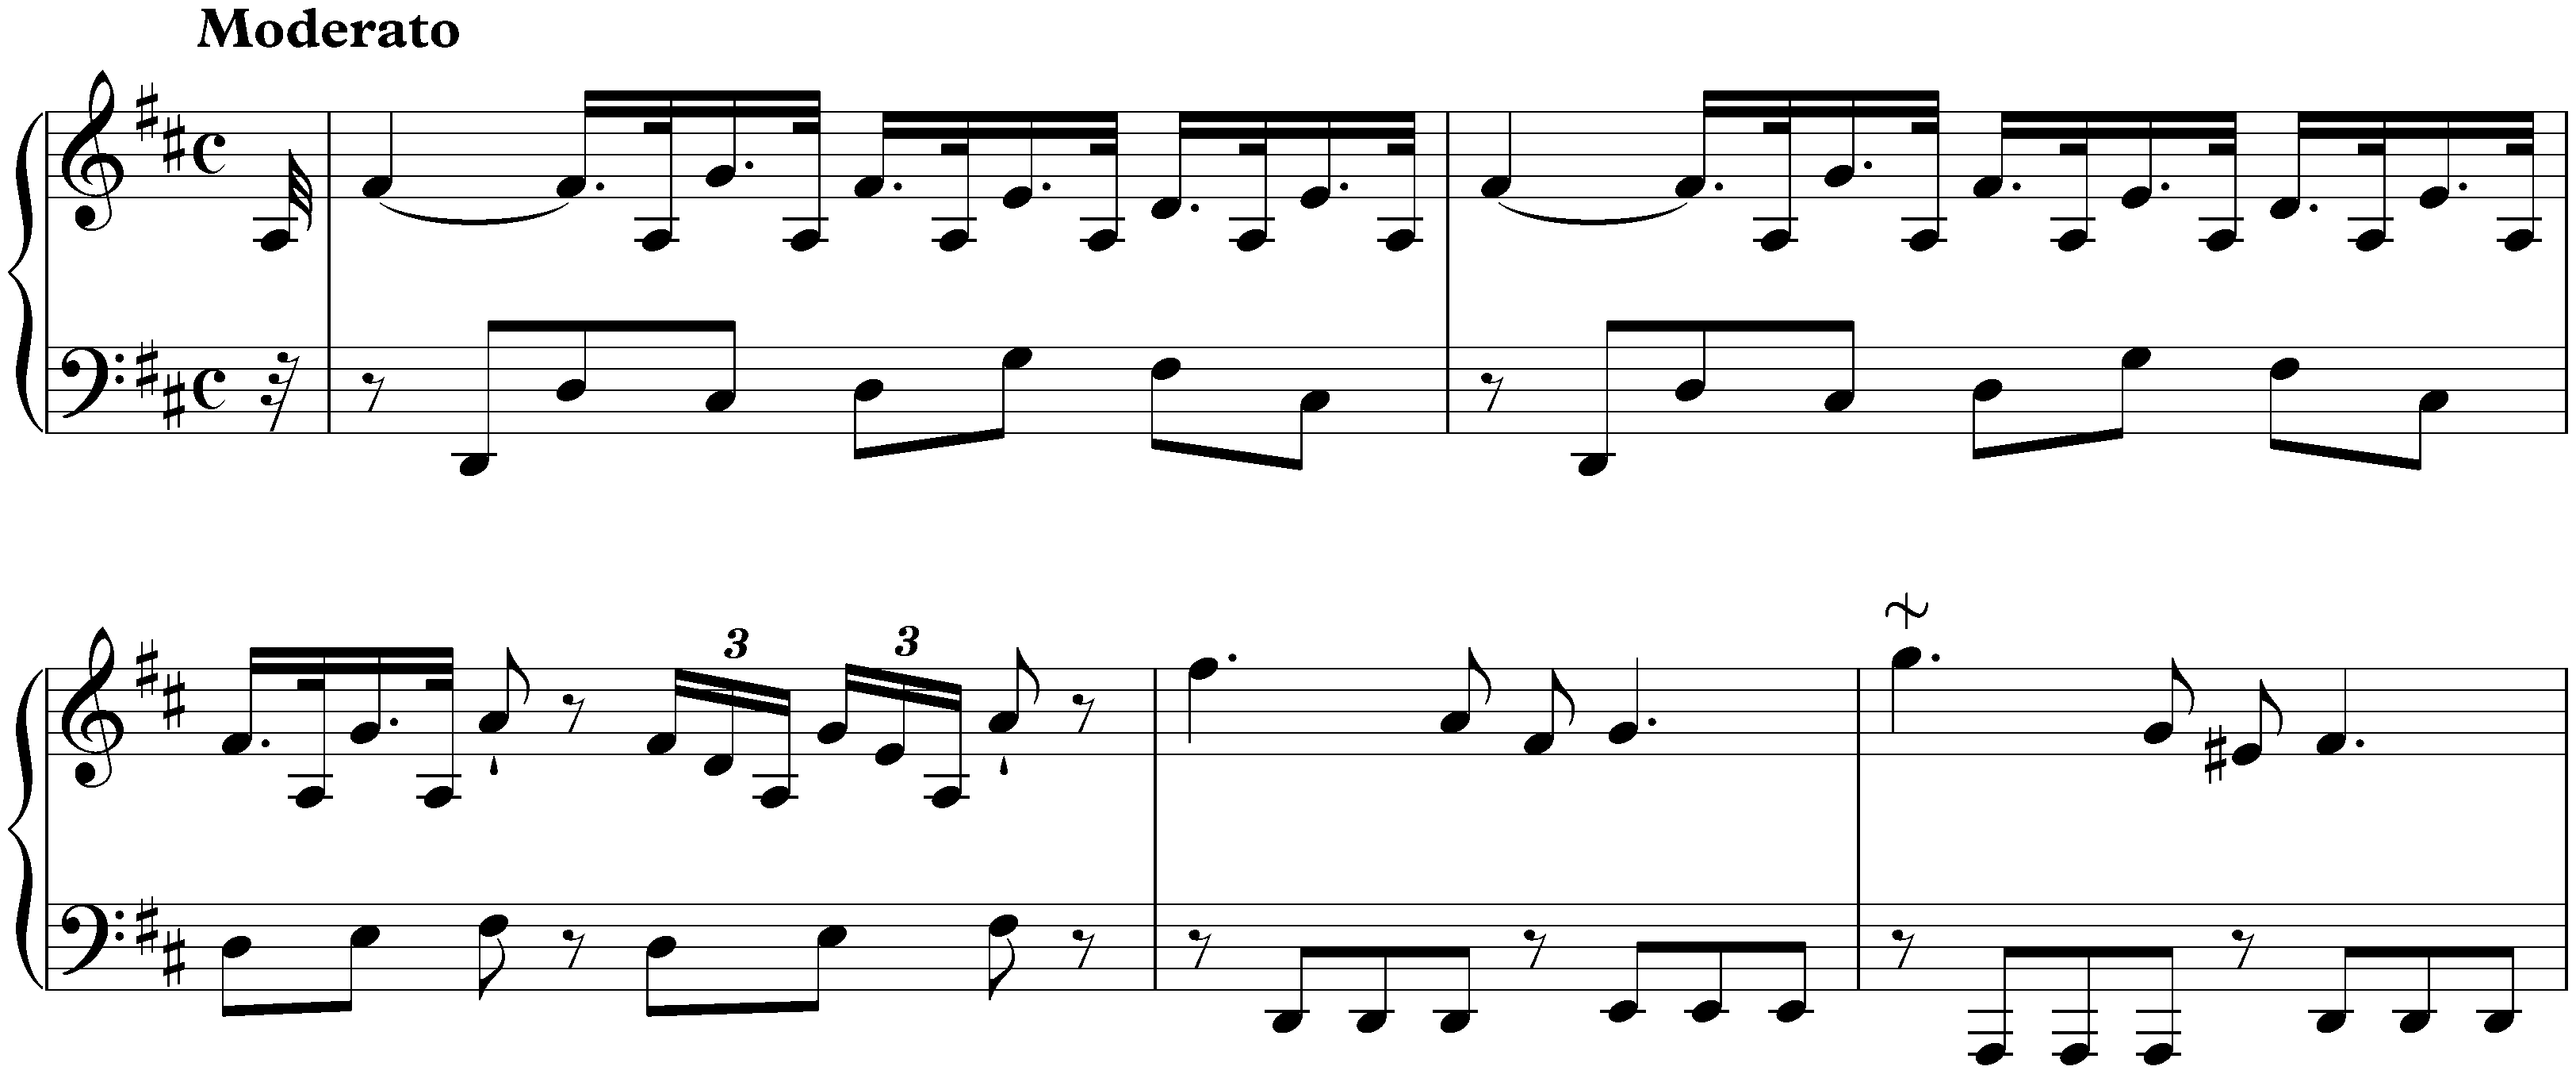 Sonata in D major, Hob. XVI:19; 1. Moderato